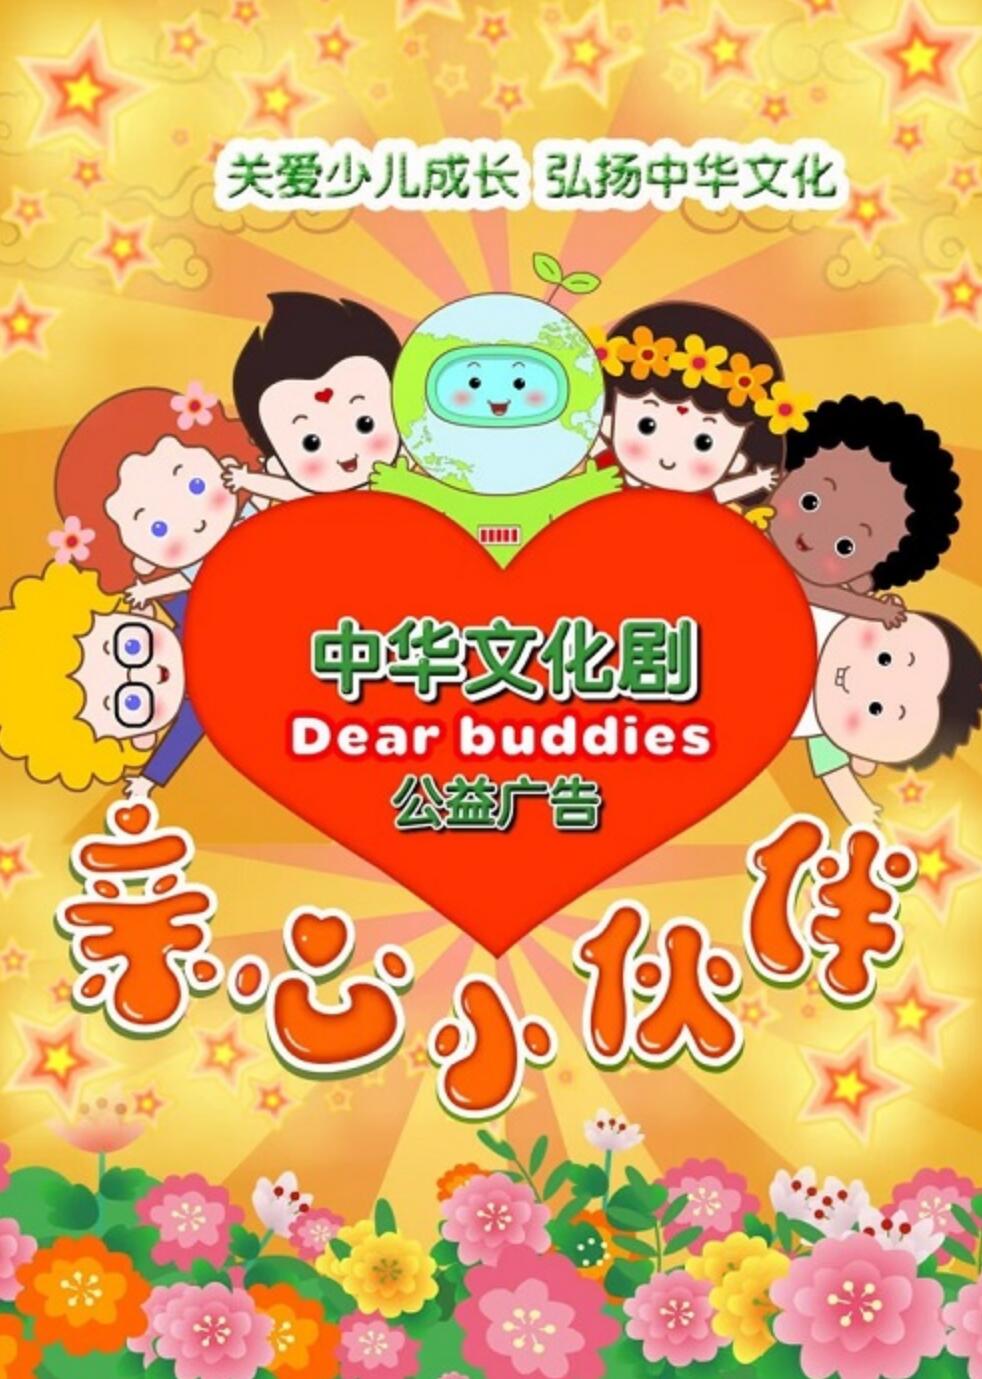 《亲心小伙伴》中华文化公益广告动画第一季20集下载 mp4格式4K|1080P高清